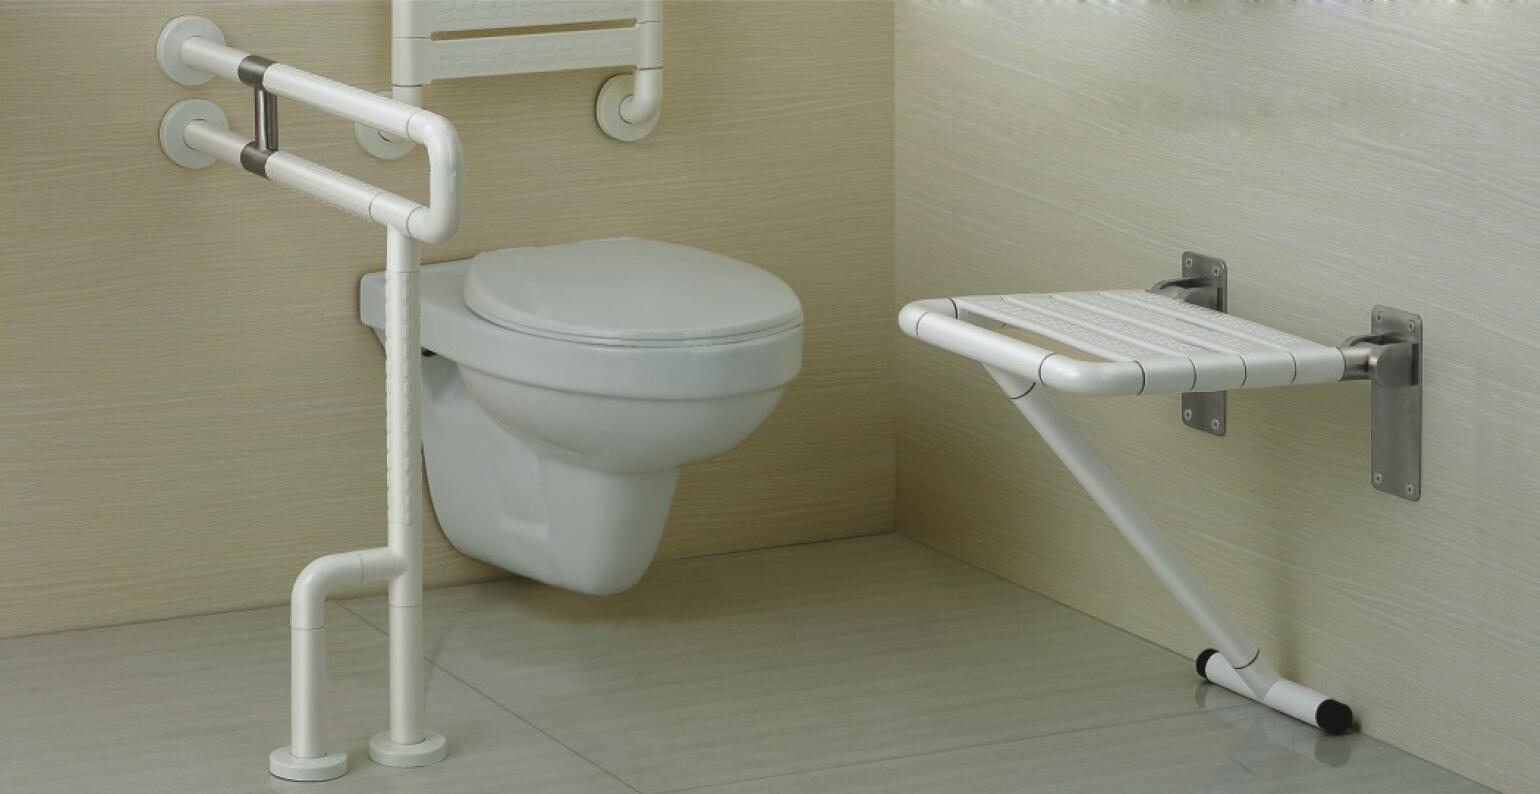 Aké sú dôvody popularity závesných toaliet?